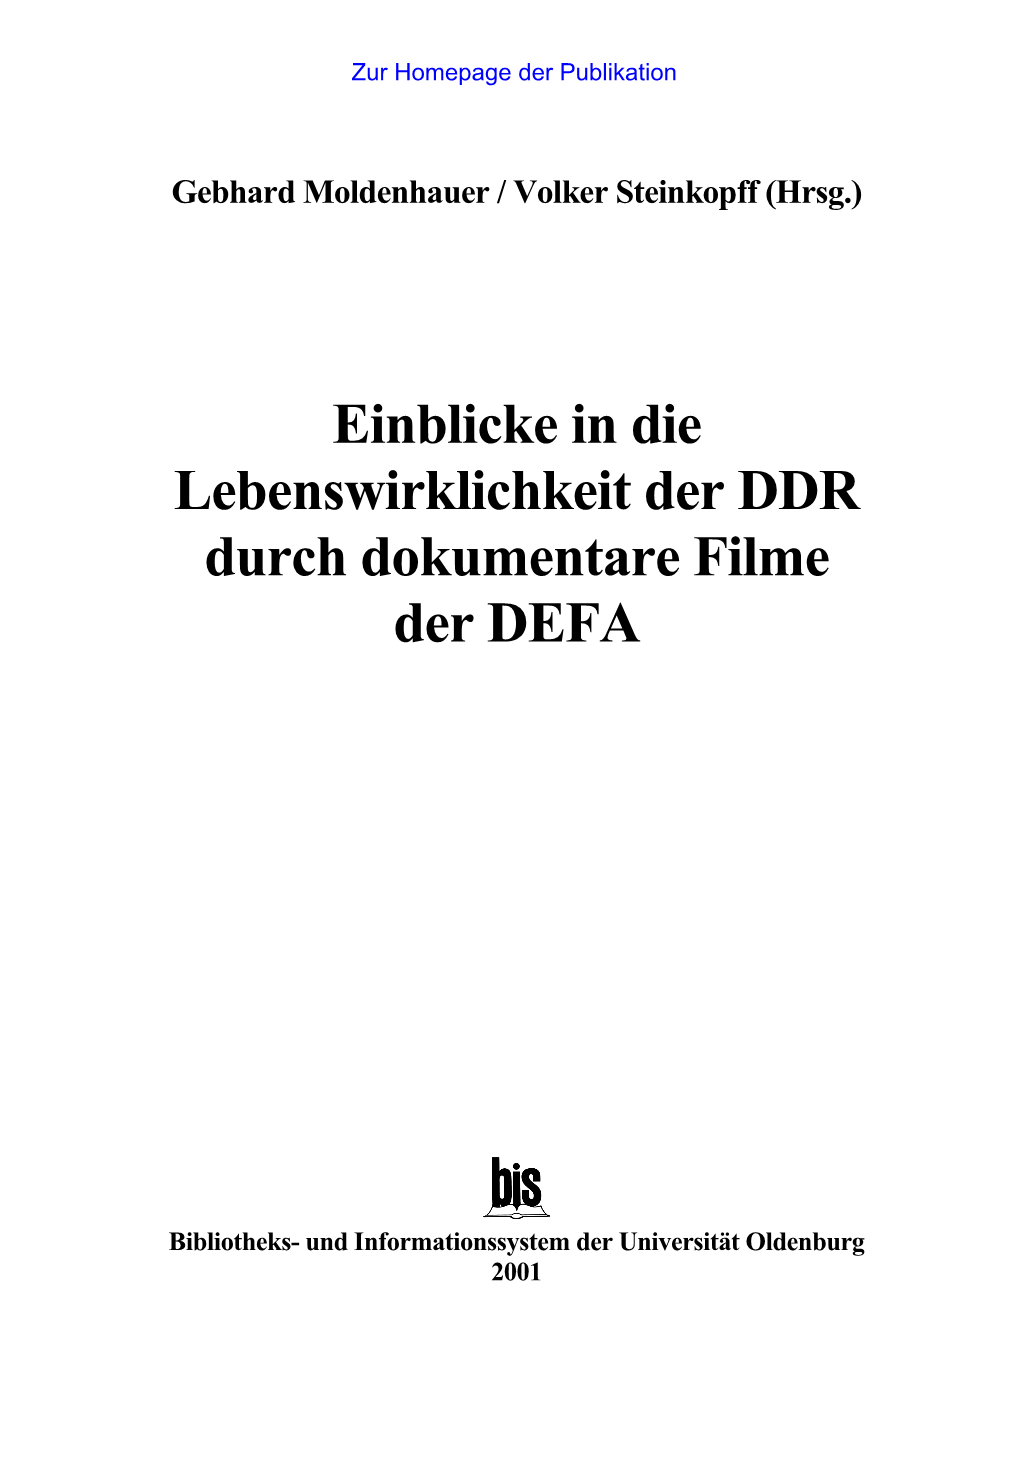 Einblicke in Die Lebenswirklichkeit Der DDR Durch Dokumentare Filme Der DEFA